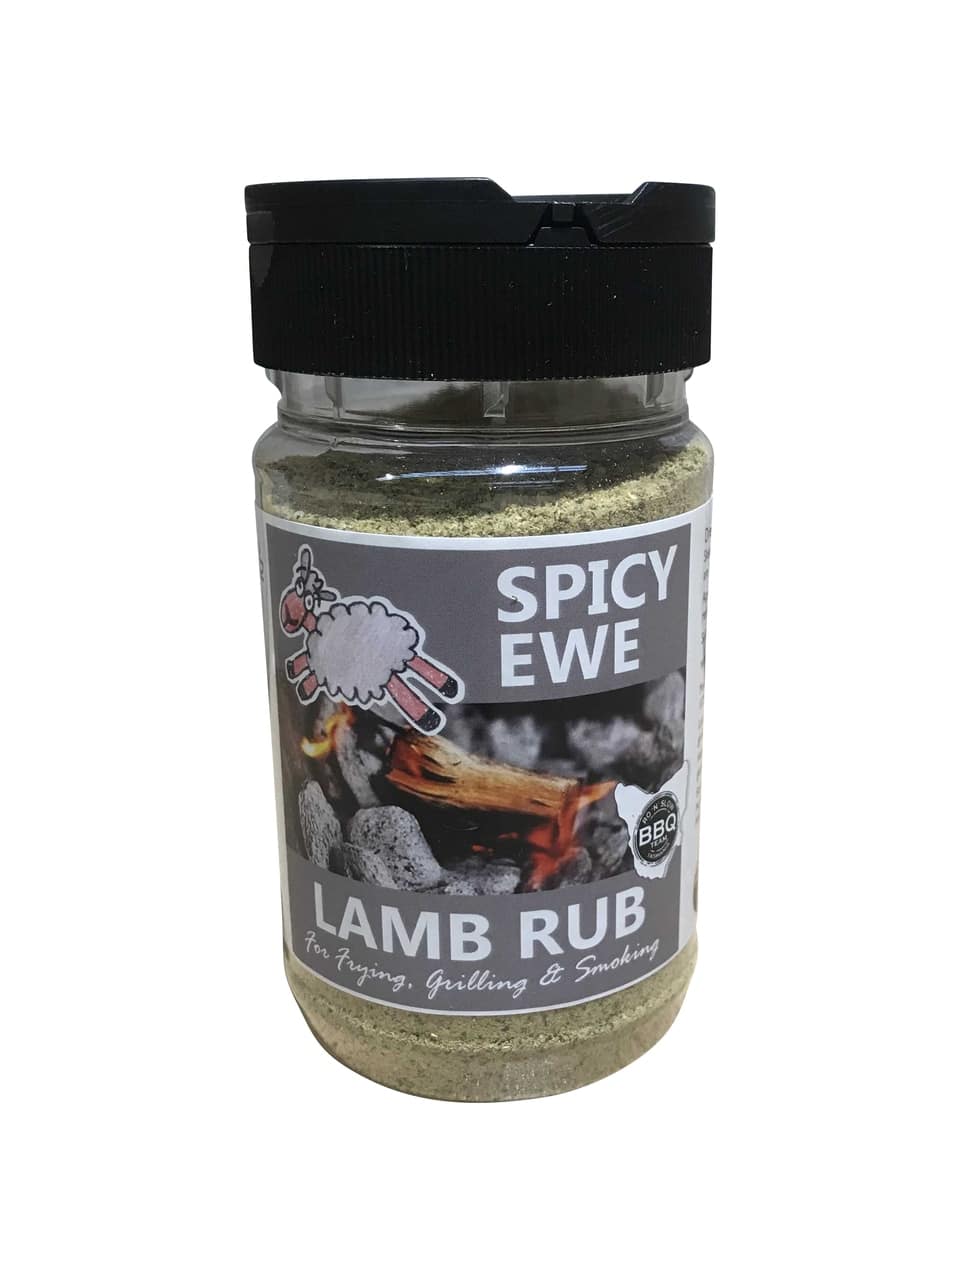 Spicy Ewe - Lamb Rub